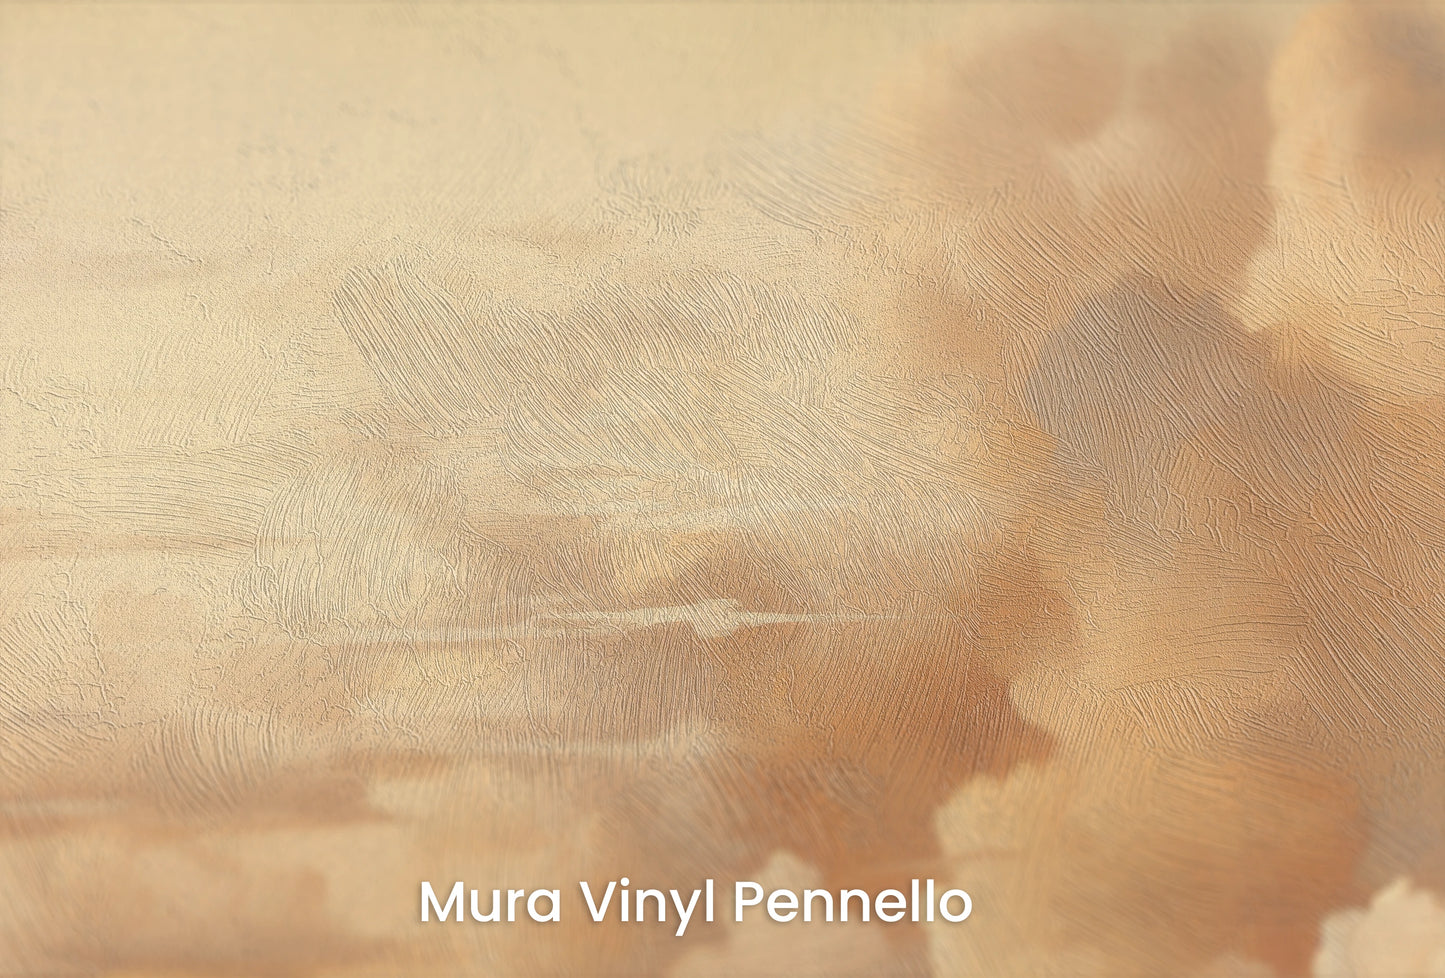 Zbliżenie na artystyczną fototapetę o nazwie Golden Majesty na podłożu Mura Vinyl Pennello - faktura pociągnięć pędzla malarskiego.